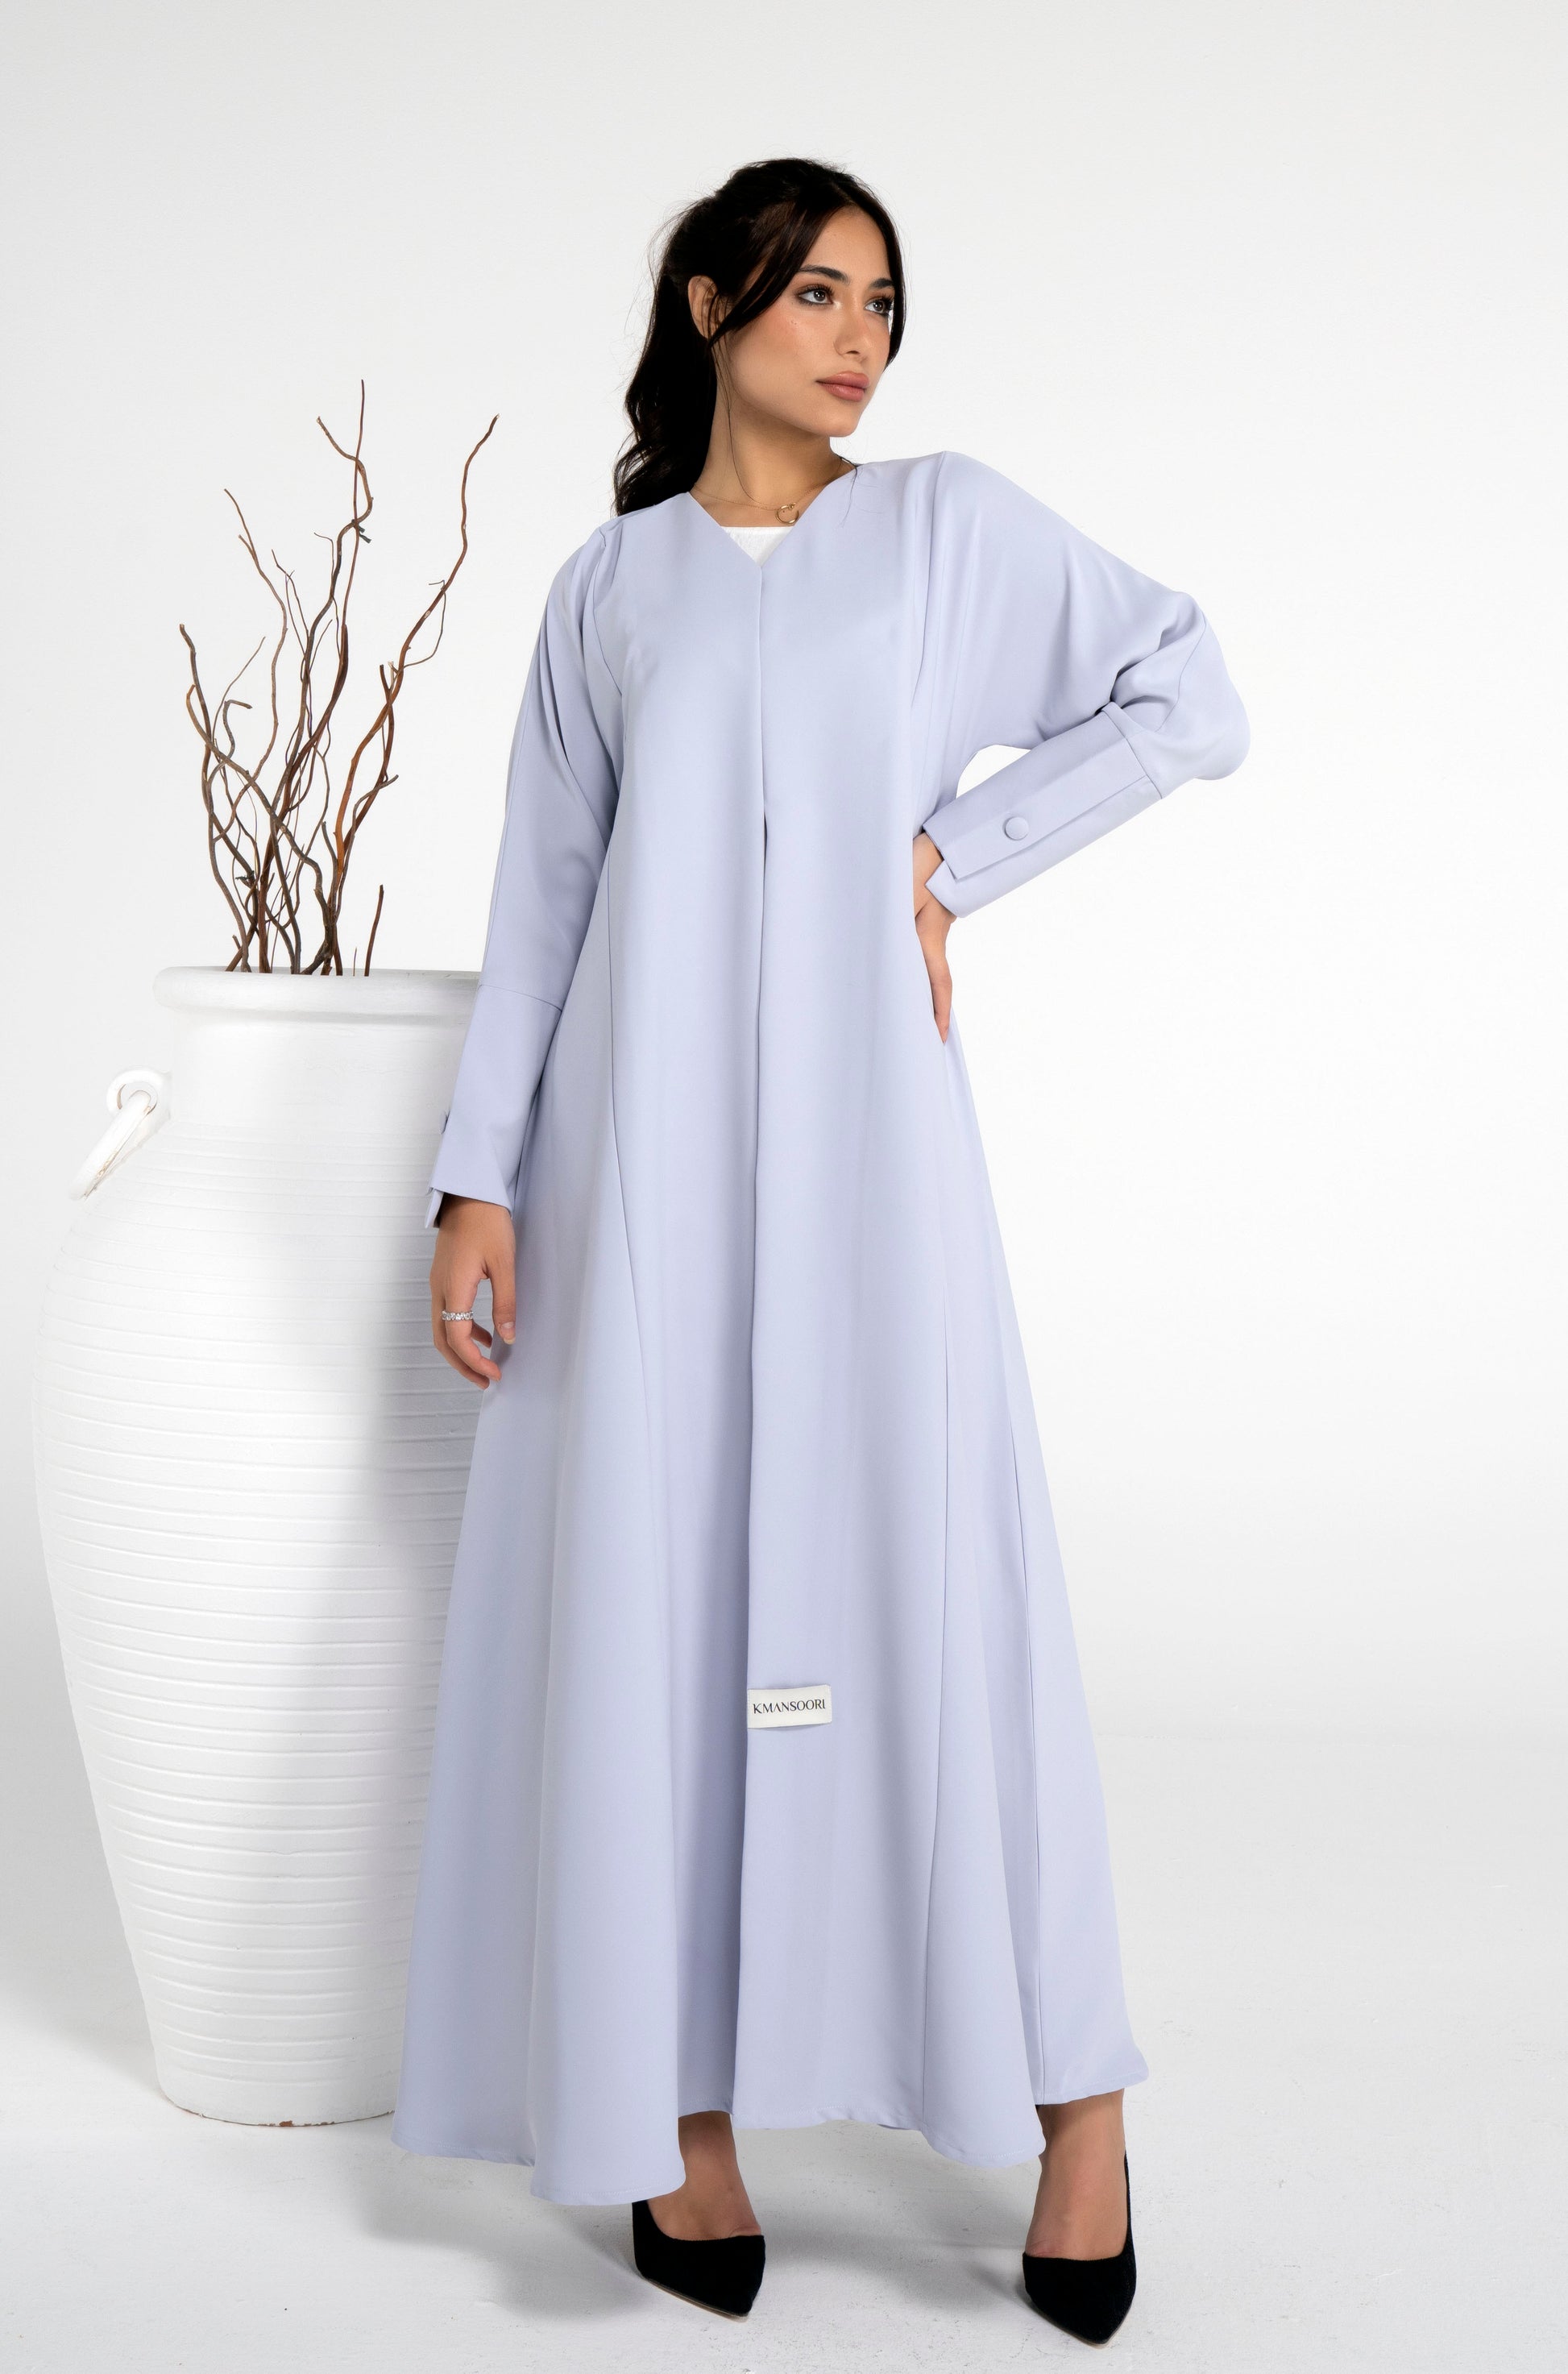 Sada light grey abaya for women